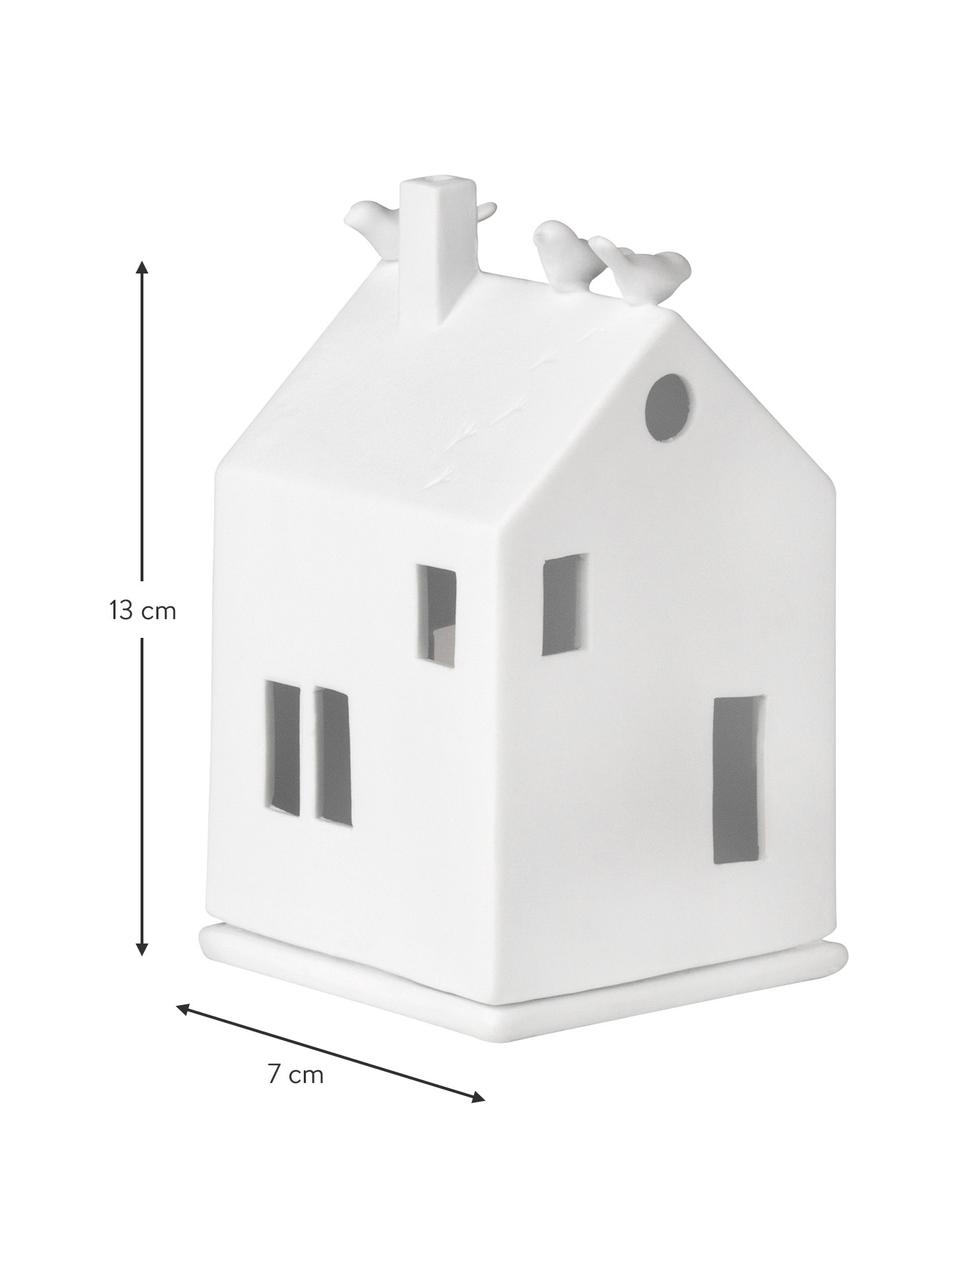 Porzellan-Lichthaus Living in Weiß, Porzellan, Weiß, B 7 x H 13 cm